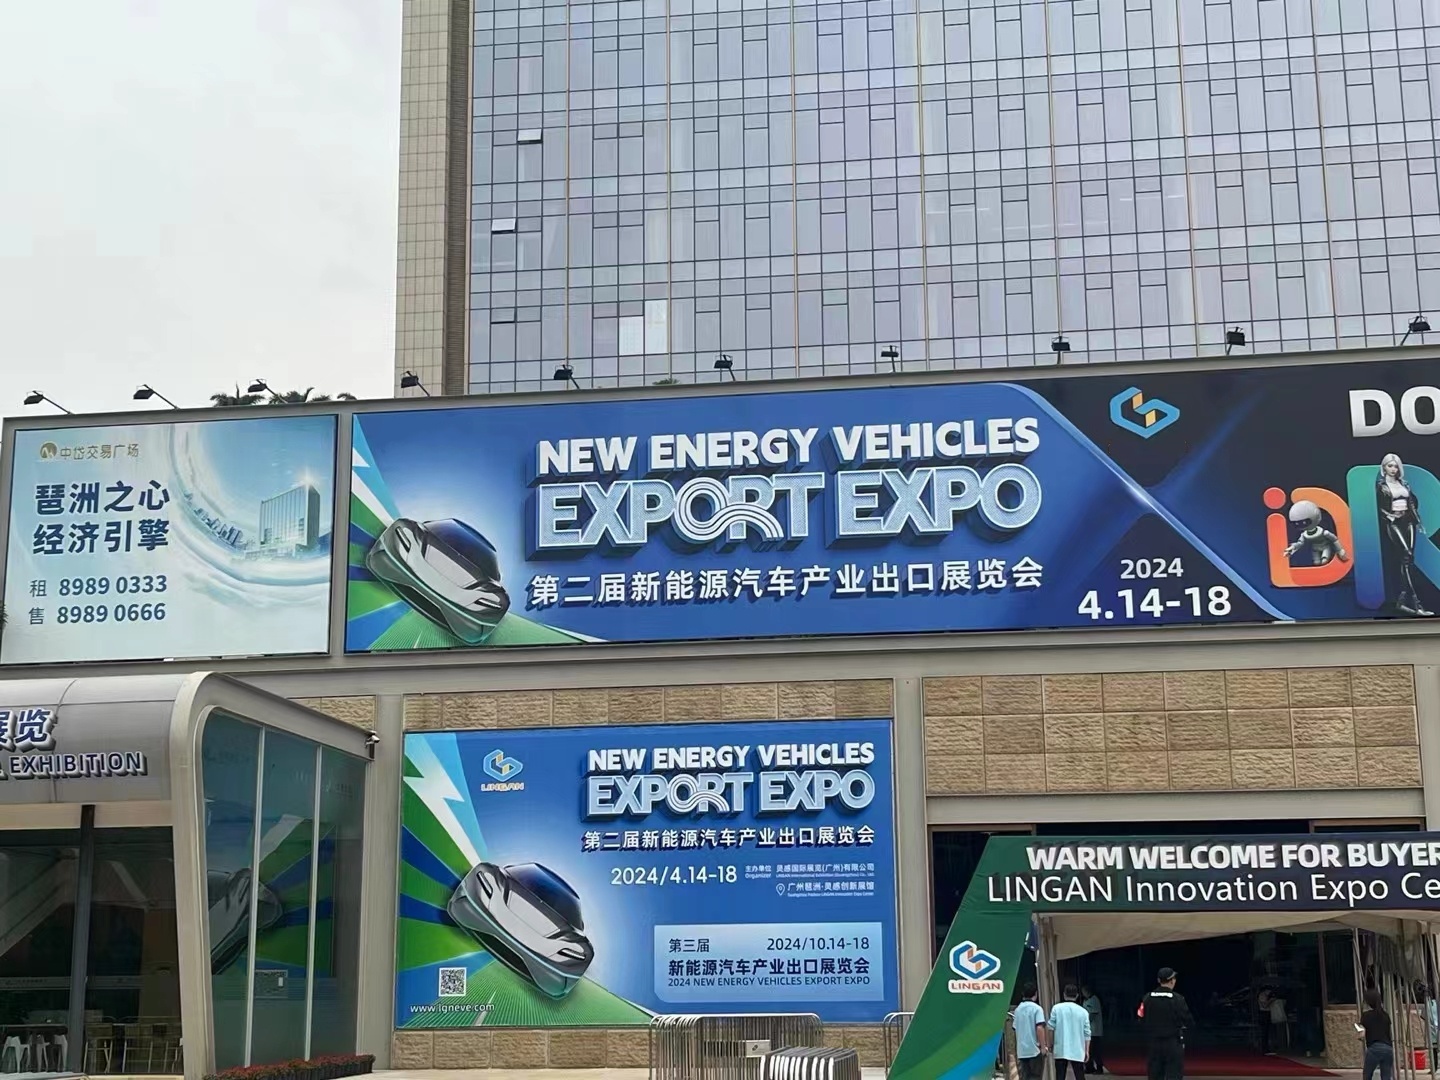 ការអញ្ជើញ |New Energy Vehicle Export EXPO Nesetk Auto Booth No.1A25